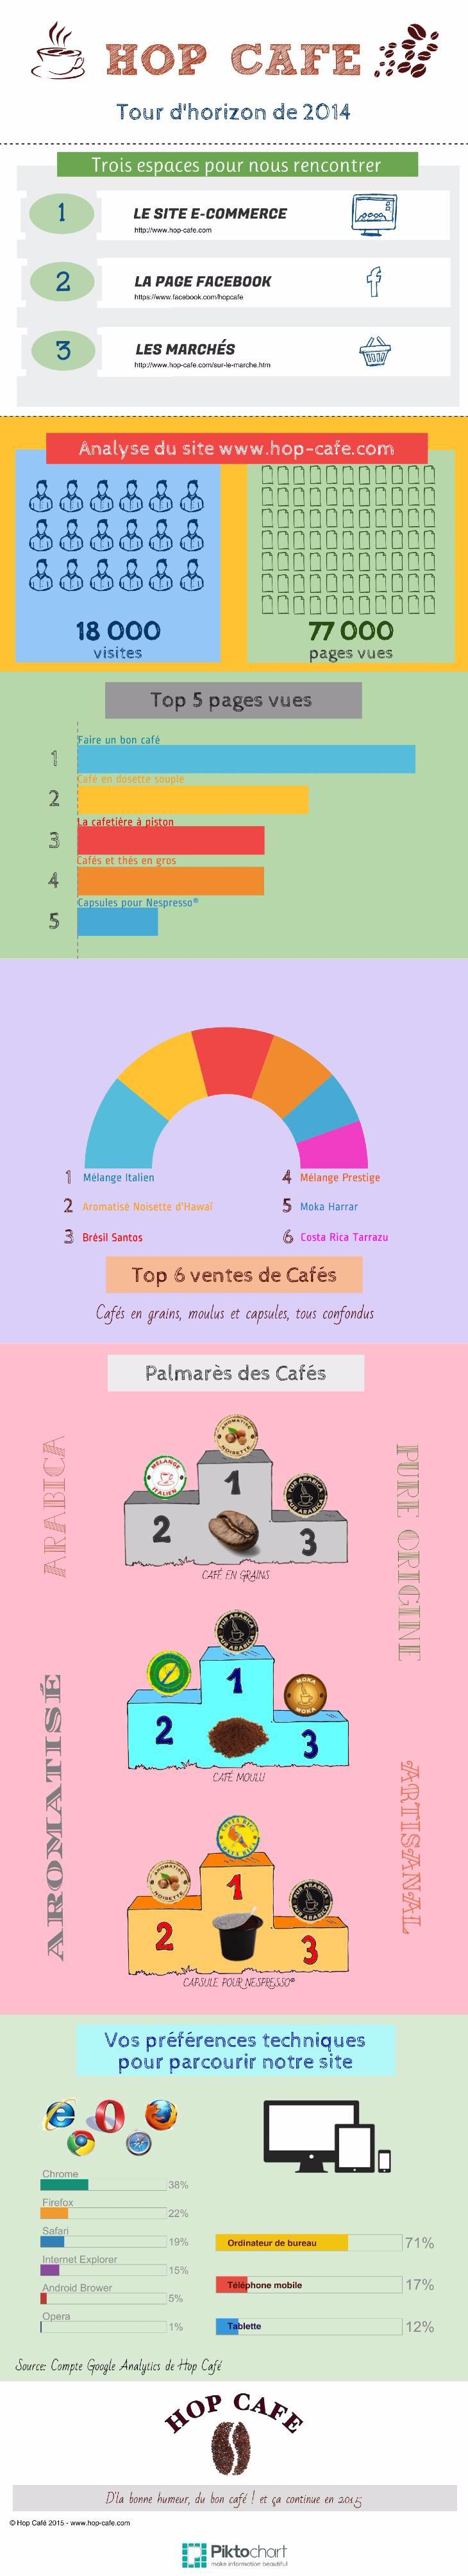 L'infographie de Hop Café en 2014